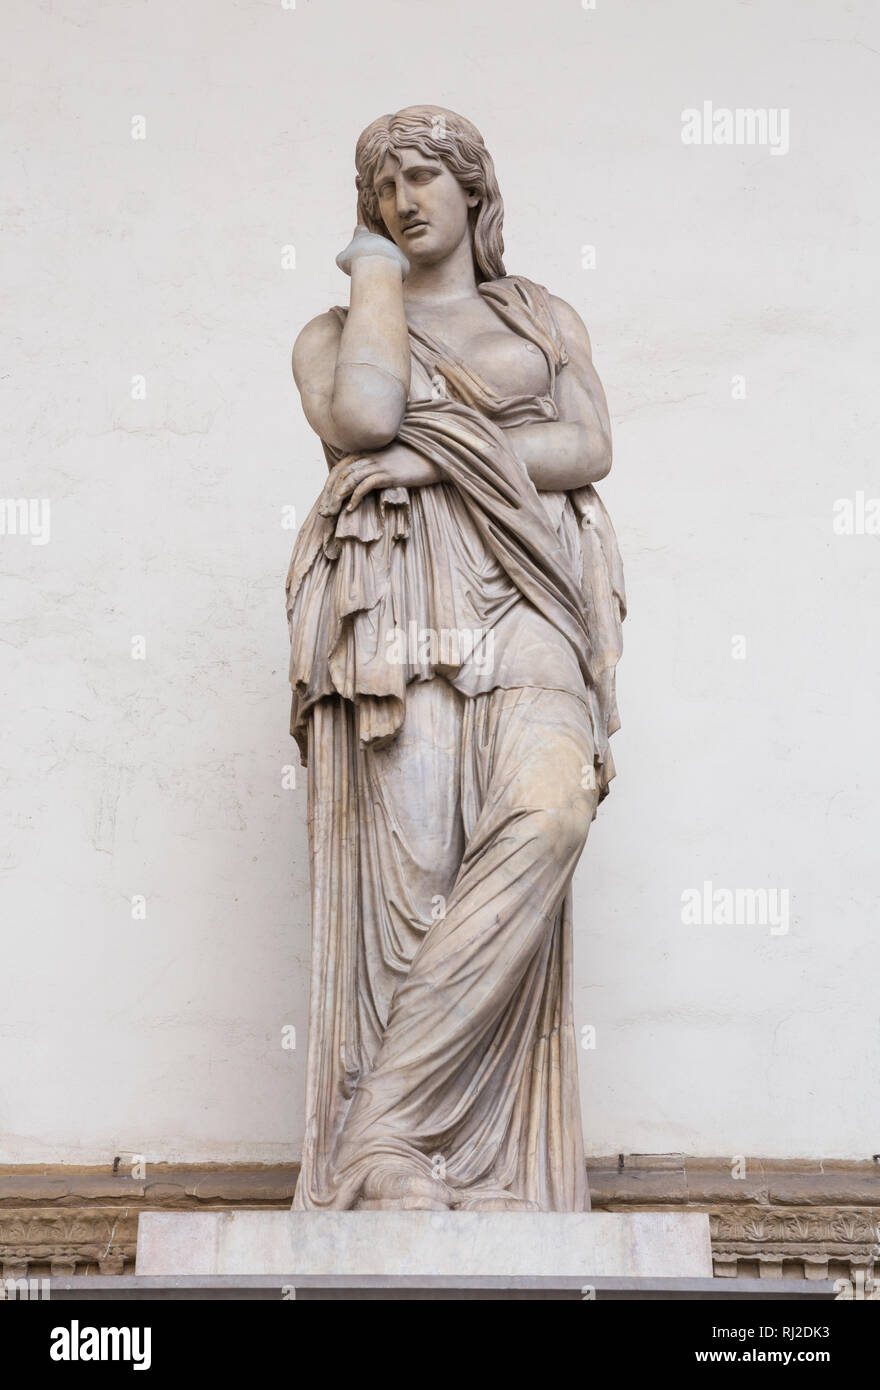 Statua in marmo di Thusnelda nella Loggia dei Lanzi, Firenze, Italia. Foto Stock